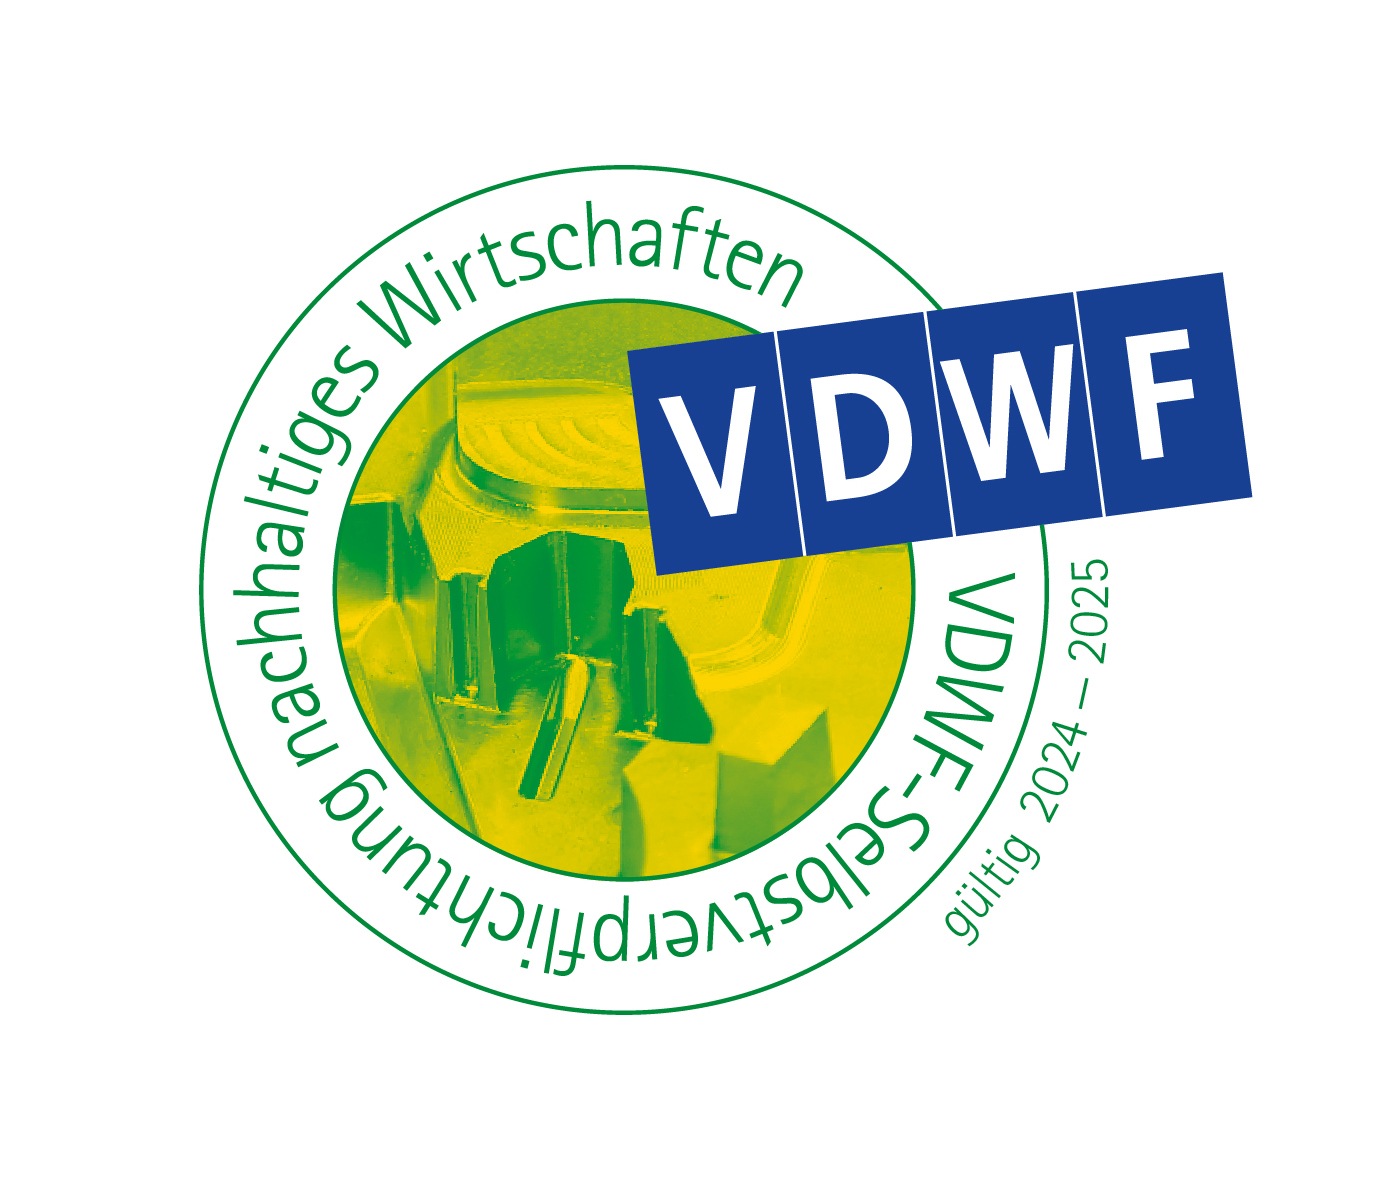 VDWF führt Siegel für die Selbstverpflichtung zu nachhaltigem Wirtschaften im Werkzeug- und Formenbau ein